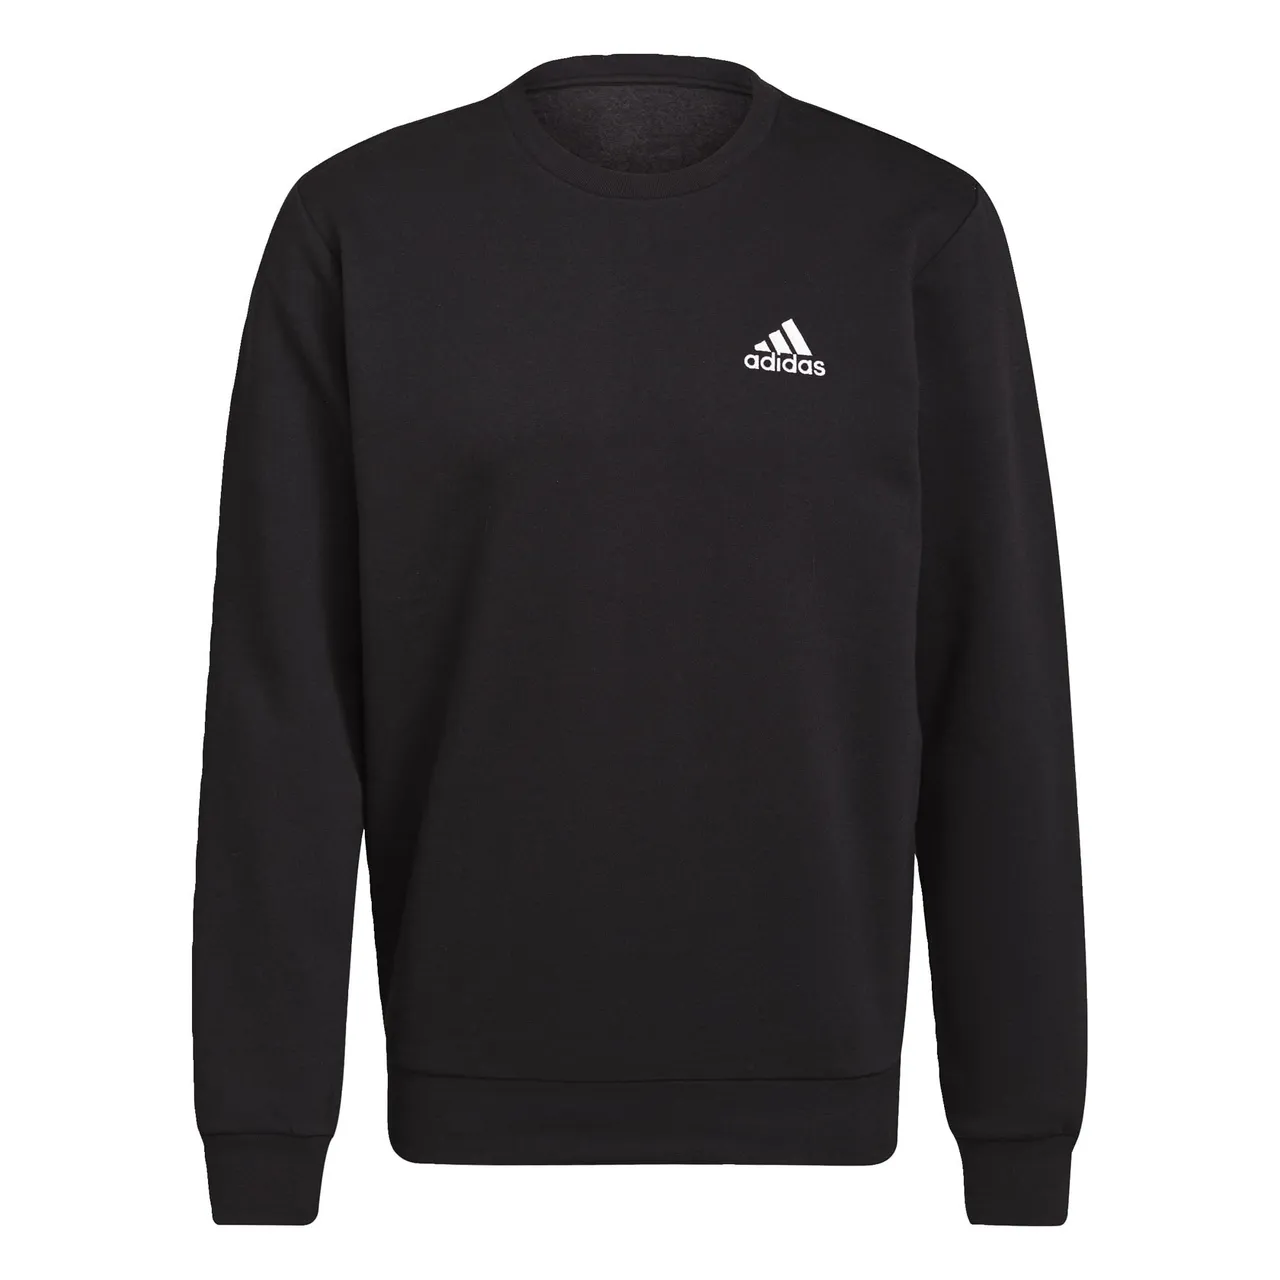 Adidas, Essentials Fleece, Sweatshirt, Black/White, Xl, Man